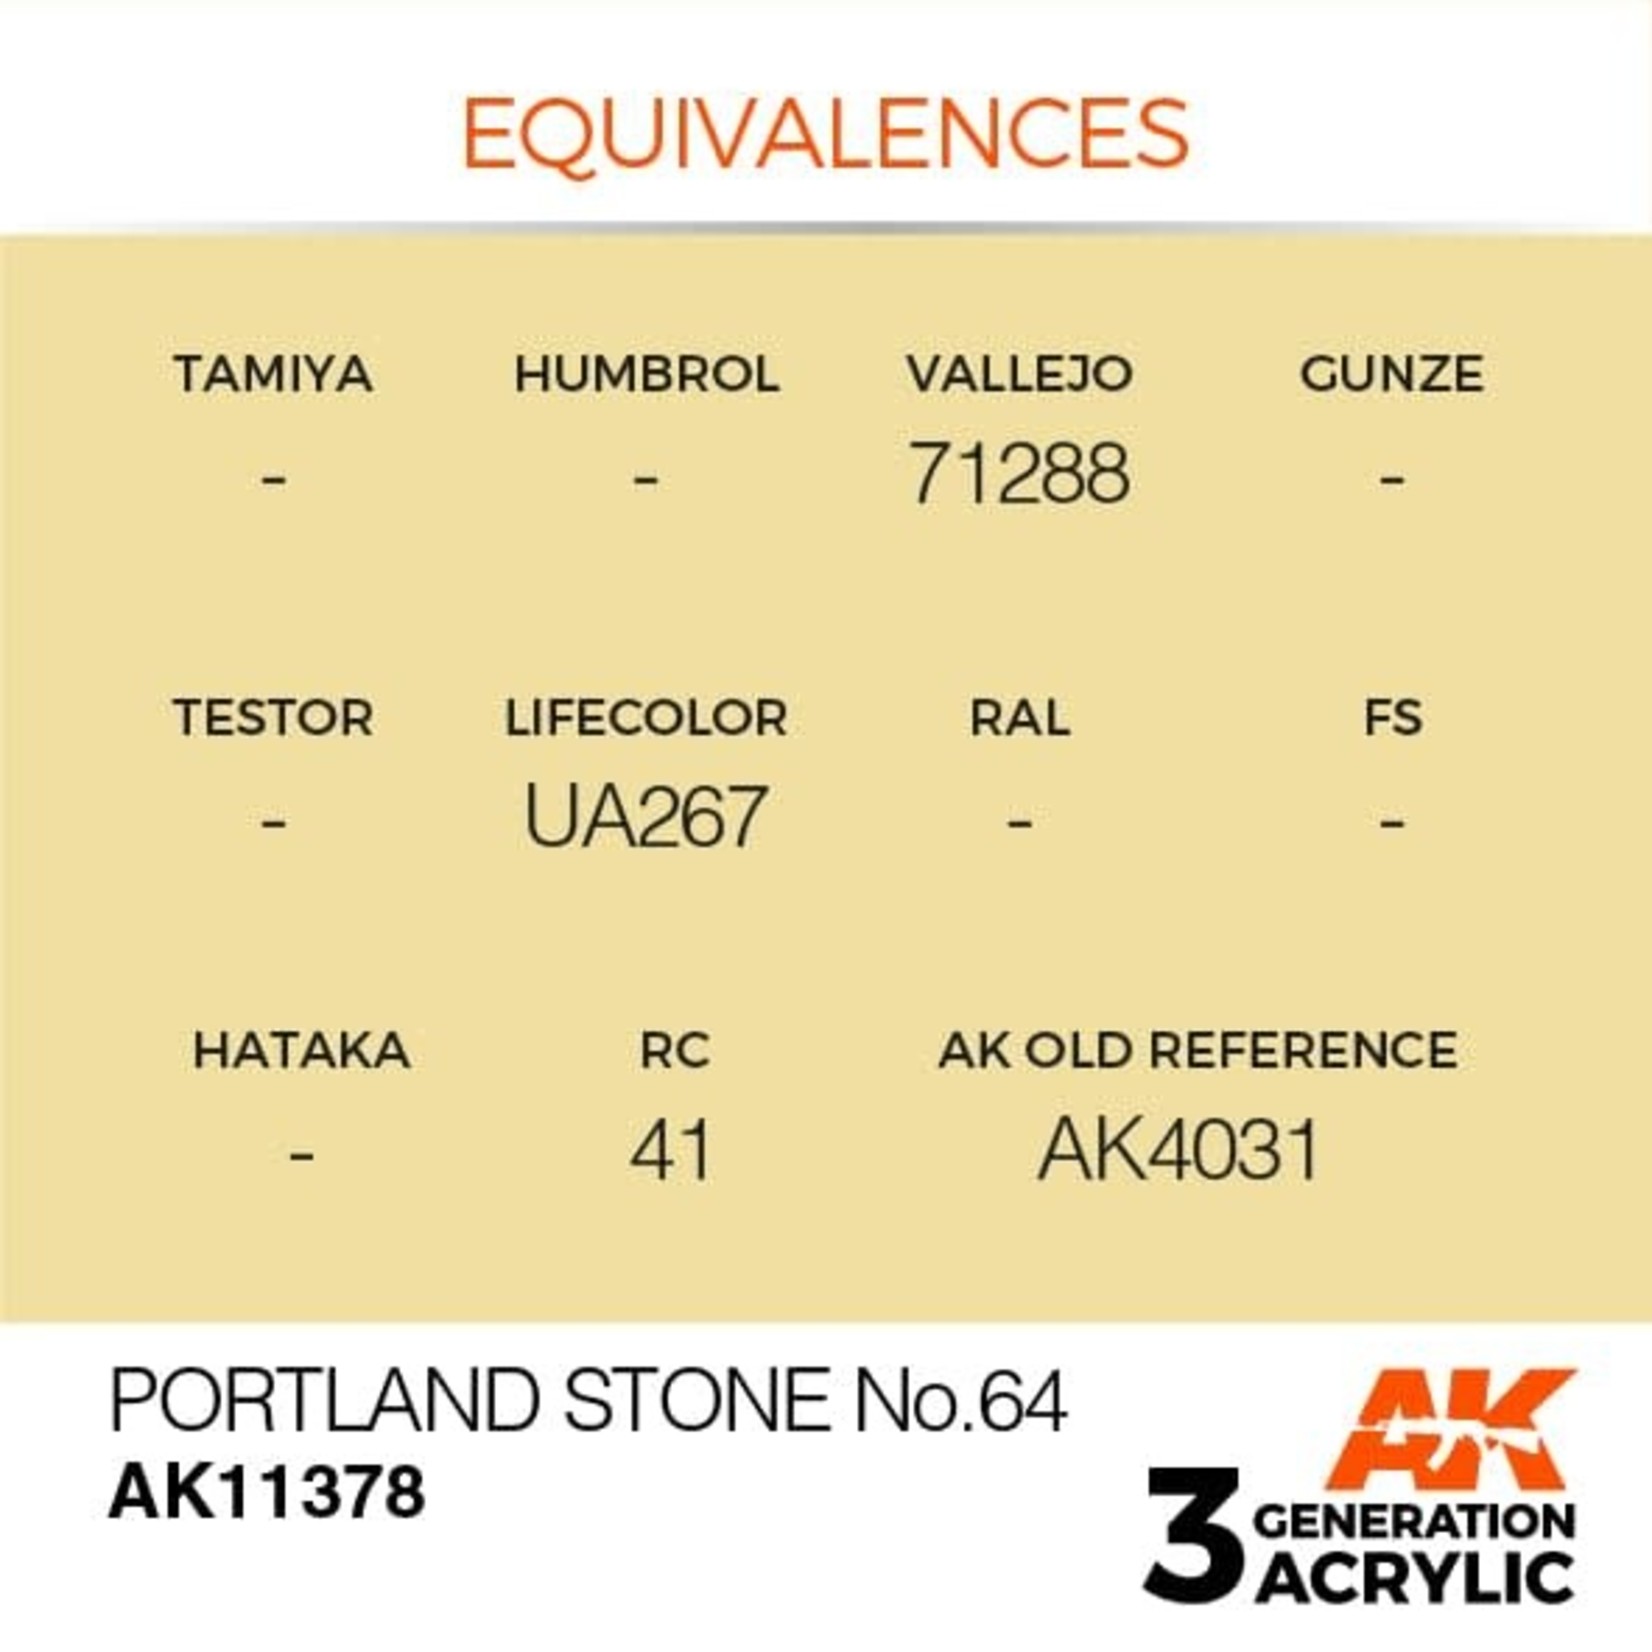 AK Interactive AK11378 3G AFV Portland Stone No.64 17ml